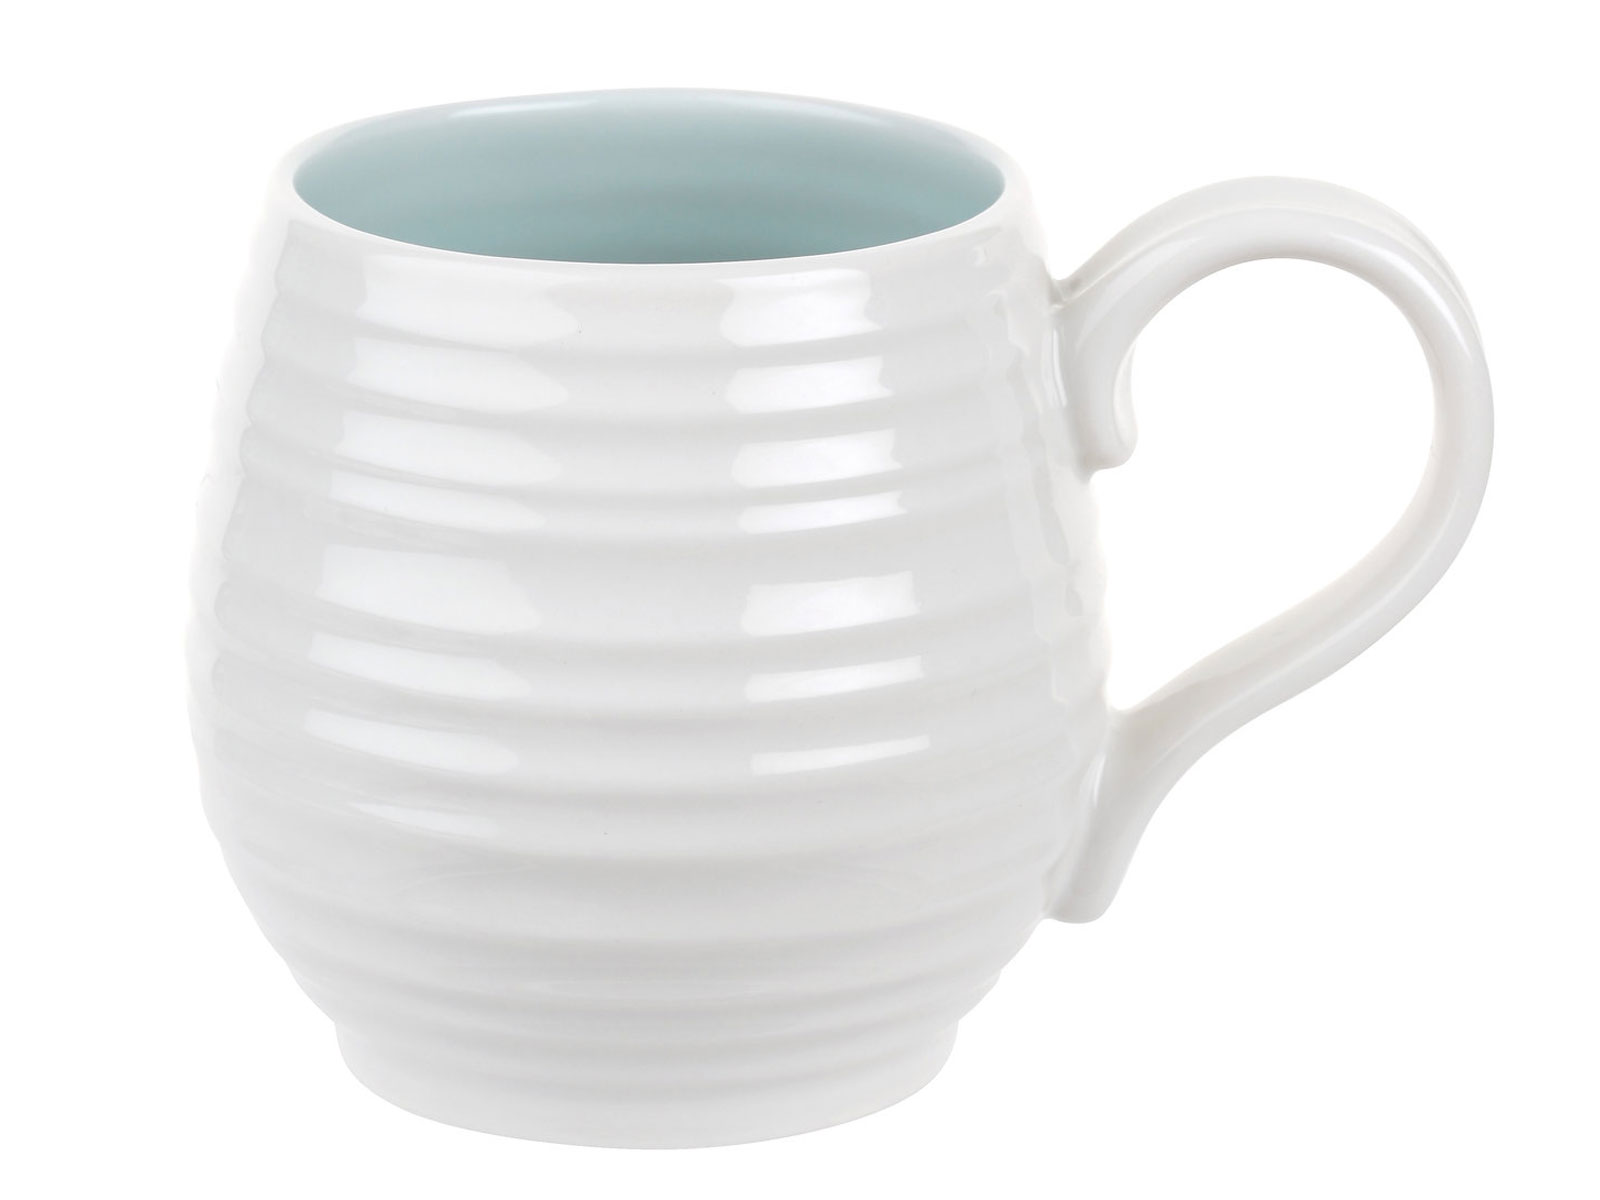 The Sophie Conran Celadon Honey Pot Mug is a white porcelain mug with a rippled texture and soft blue interior